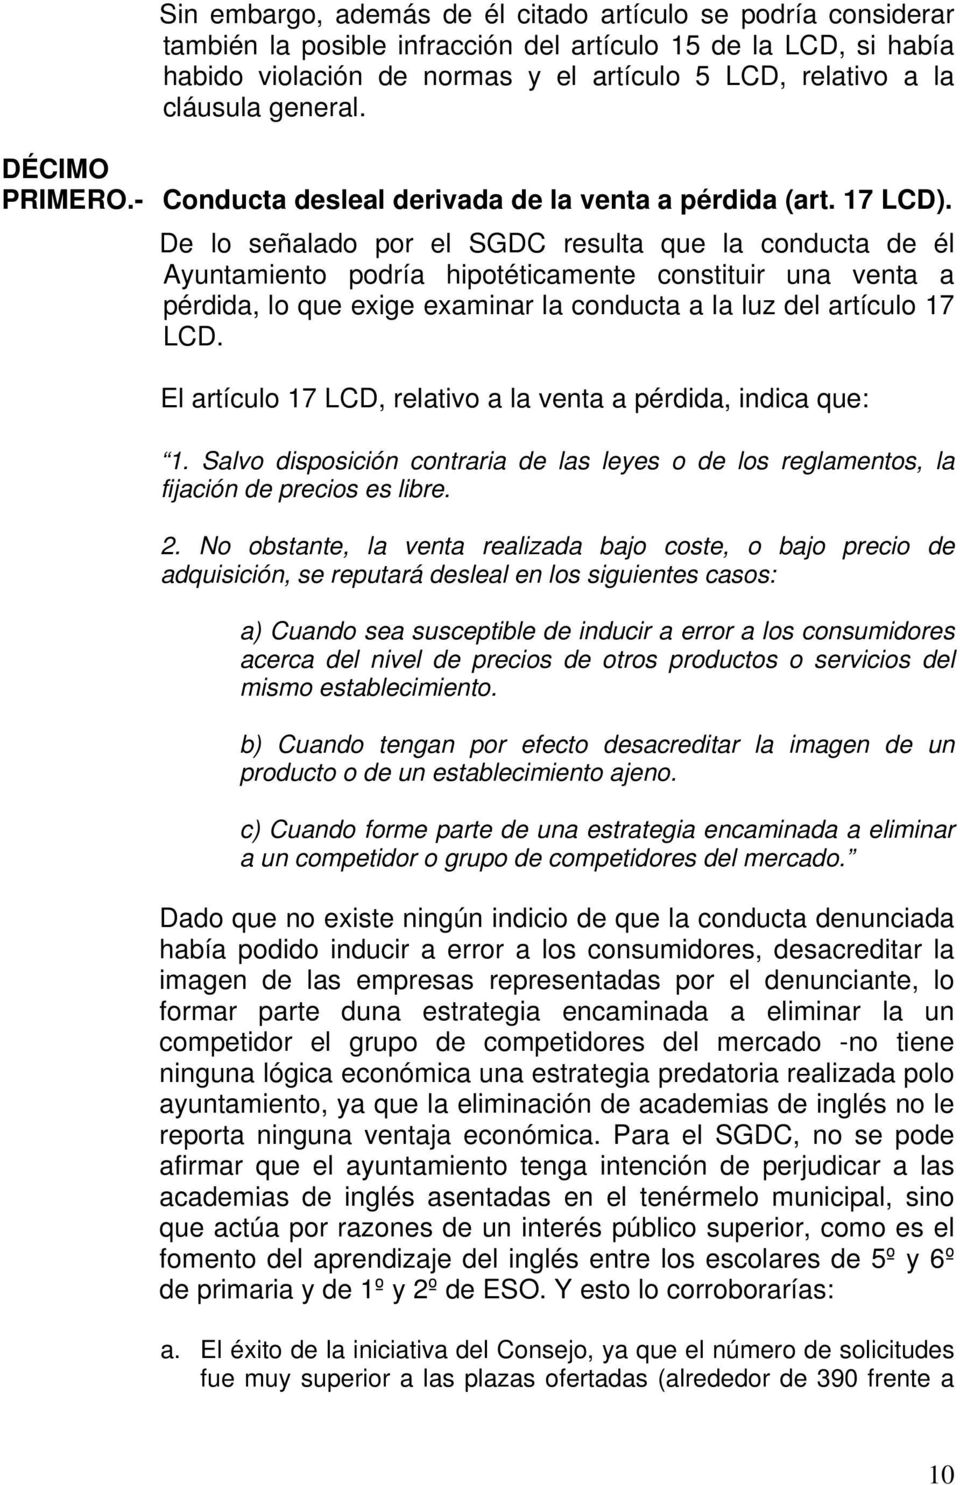 De lo señalado por el SGDC resulta que la conducta de él Ayuntamiento podría hipotéticamente constituir una venta a pérdida, lo que exige examinar la conducta a la luz del artículo 17 LCD.